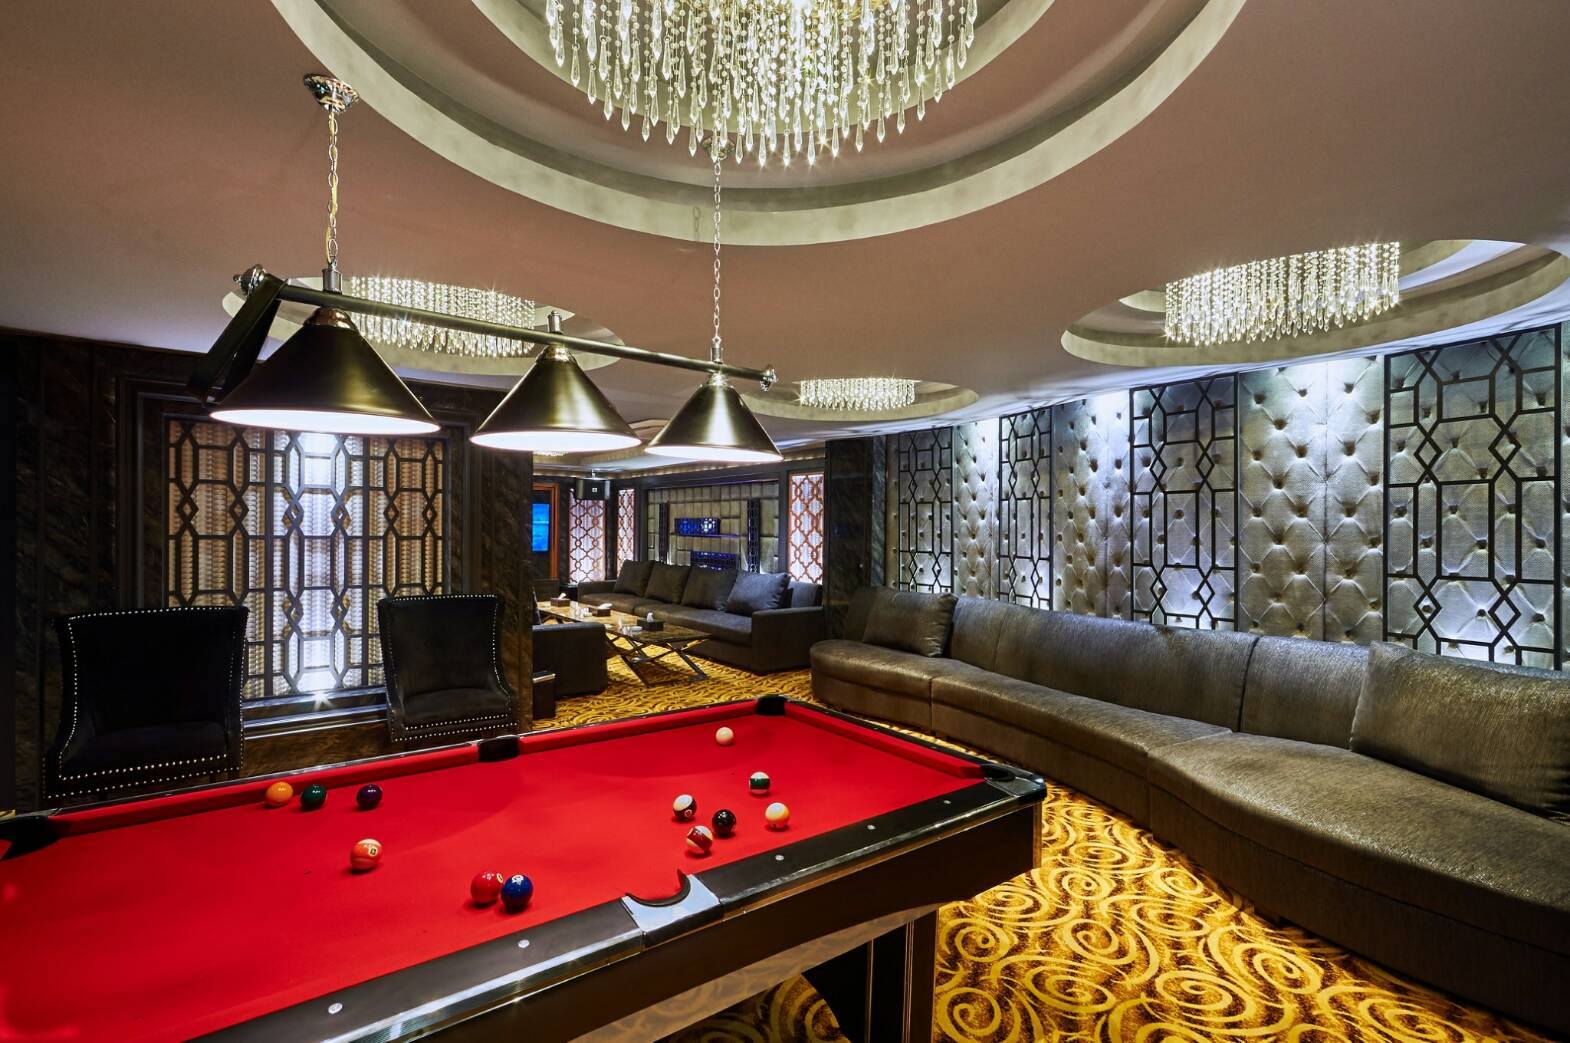 ดูไบ (Dubai Luxury Club) : กรุงเทพมหานคร (Bangkok)